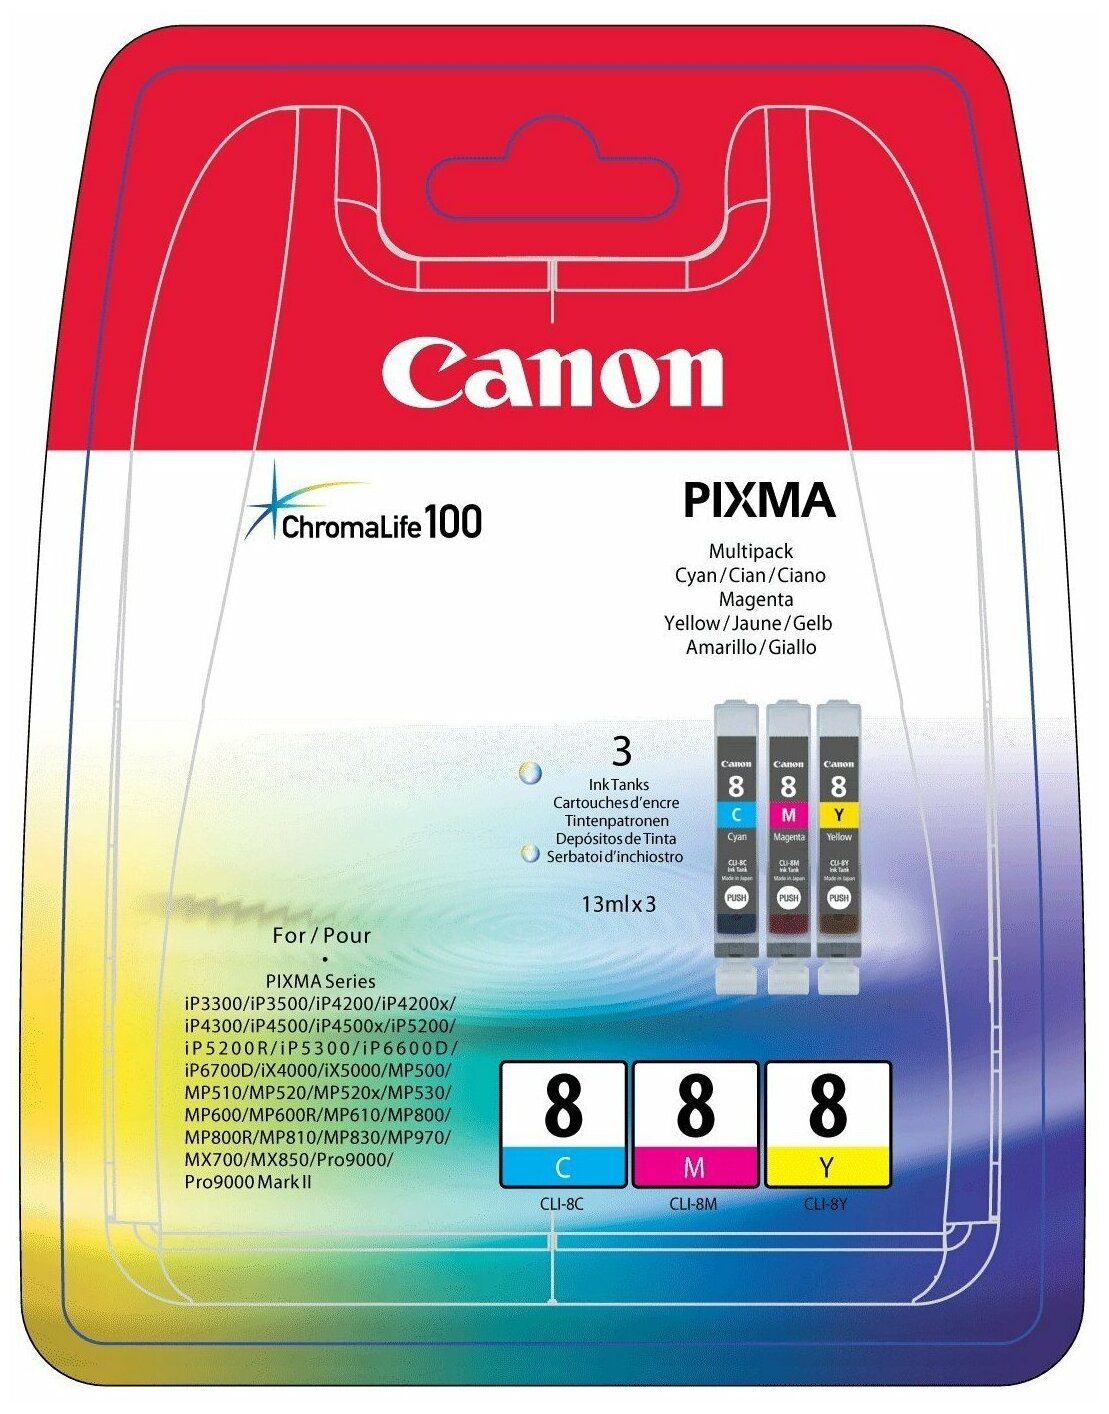 Набор картриджей Canon CLI-8CMY для Pixma iP6600D/iP4200/5200/5200R